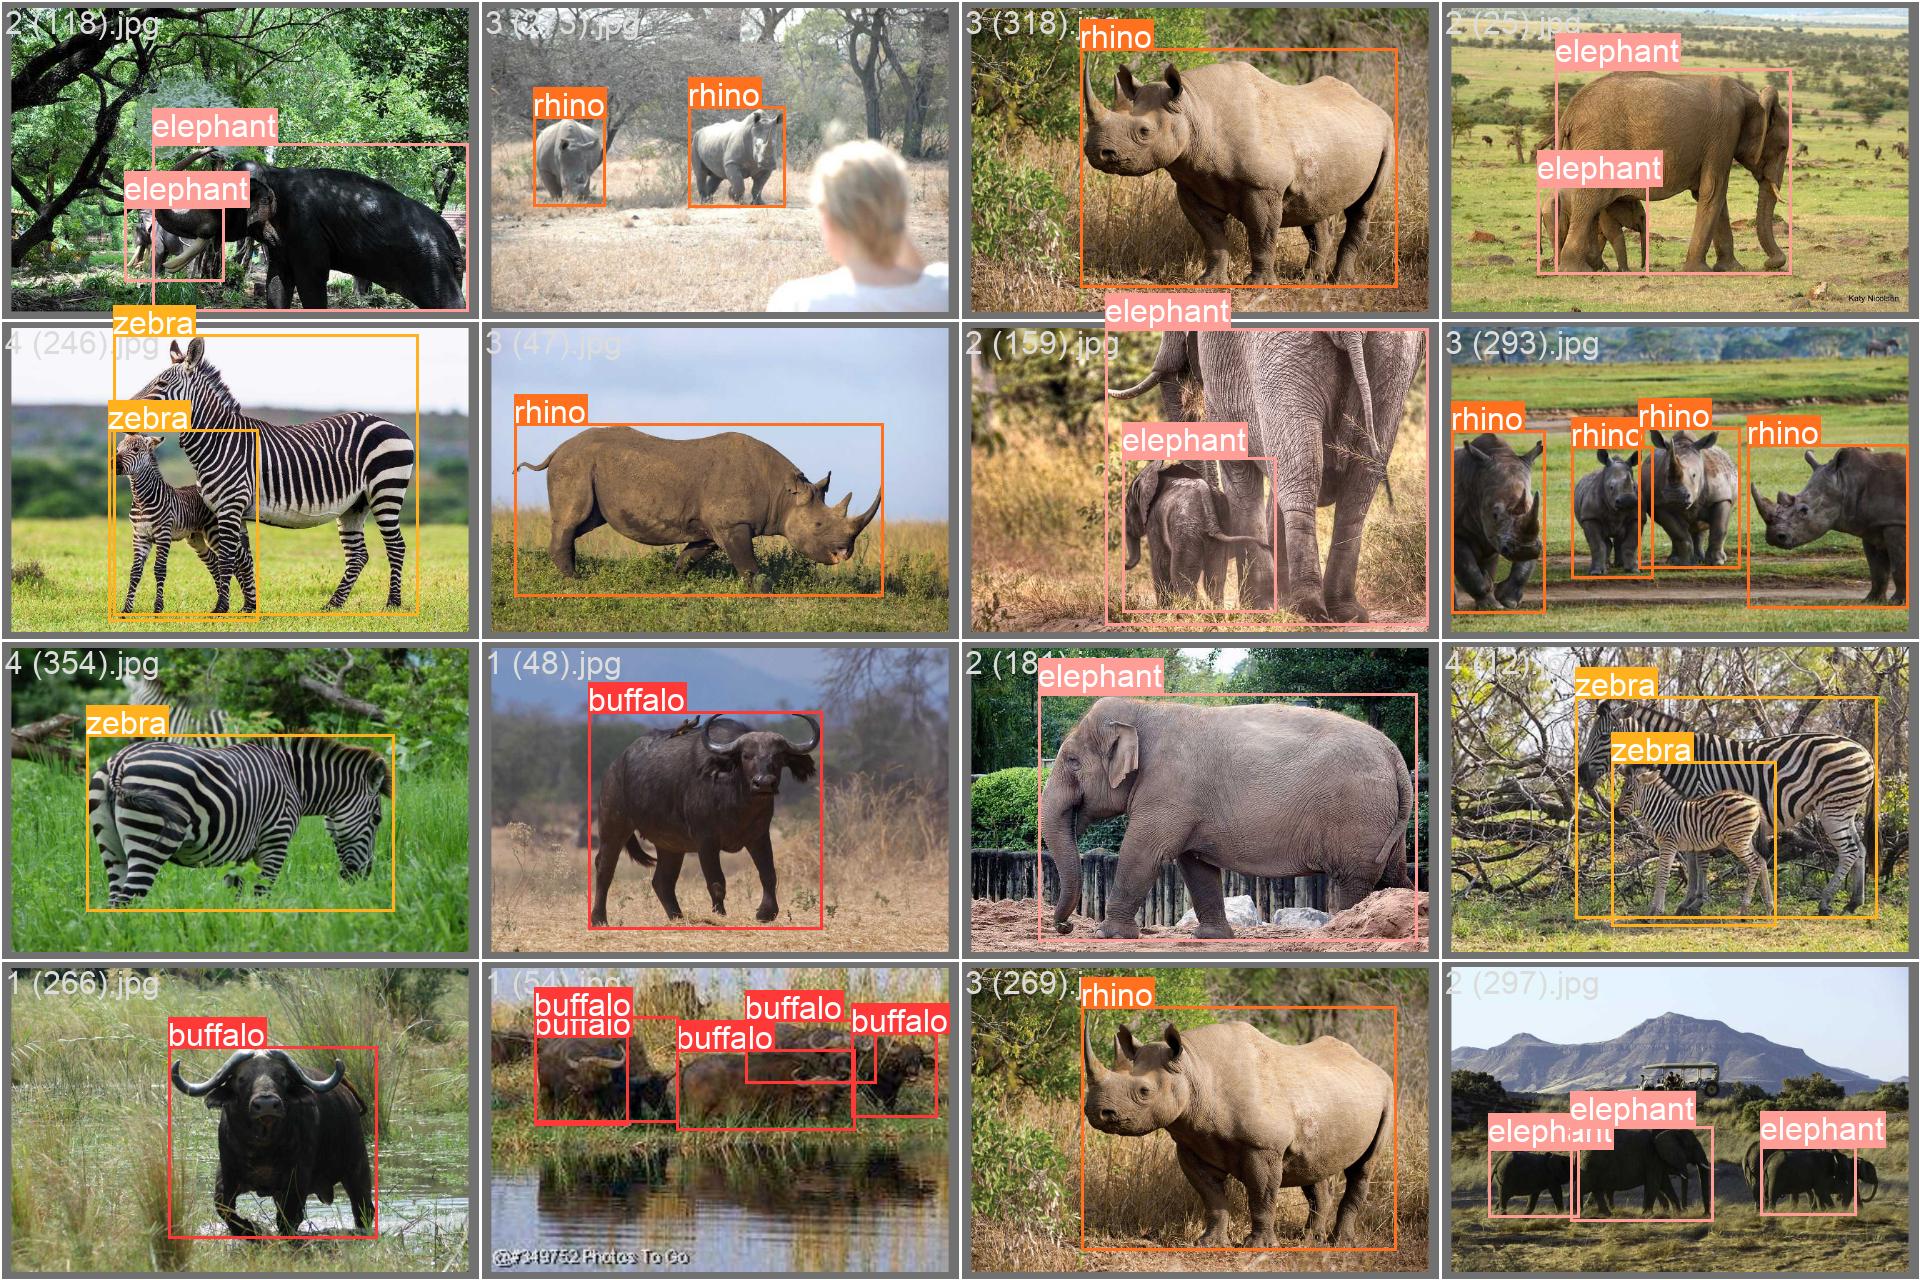 Imagen de muestra del conjunto de datos sobre la fauna africana